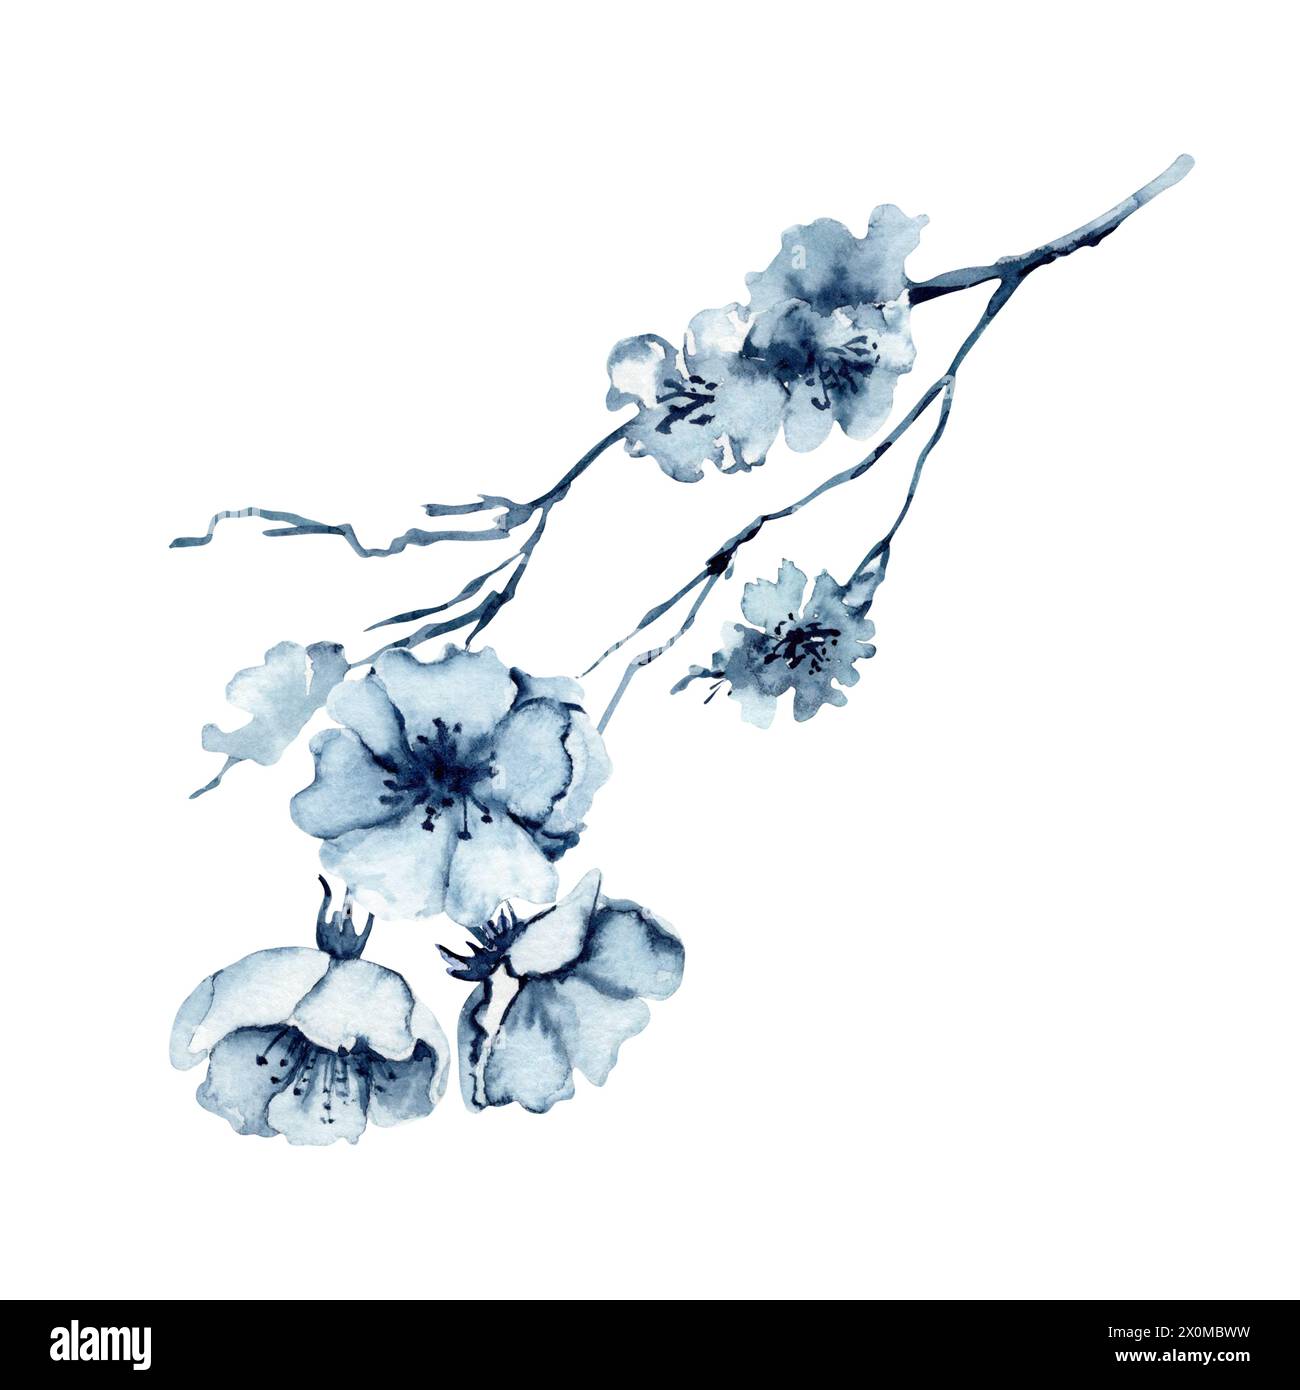 Illustration d'aquarelle de fleur de cerisier. Élément floral sud-coréen dessiné à la main isolé sur fond blanc. Fleurs monochromes bleu Indigo sur la branche Banque D'Images